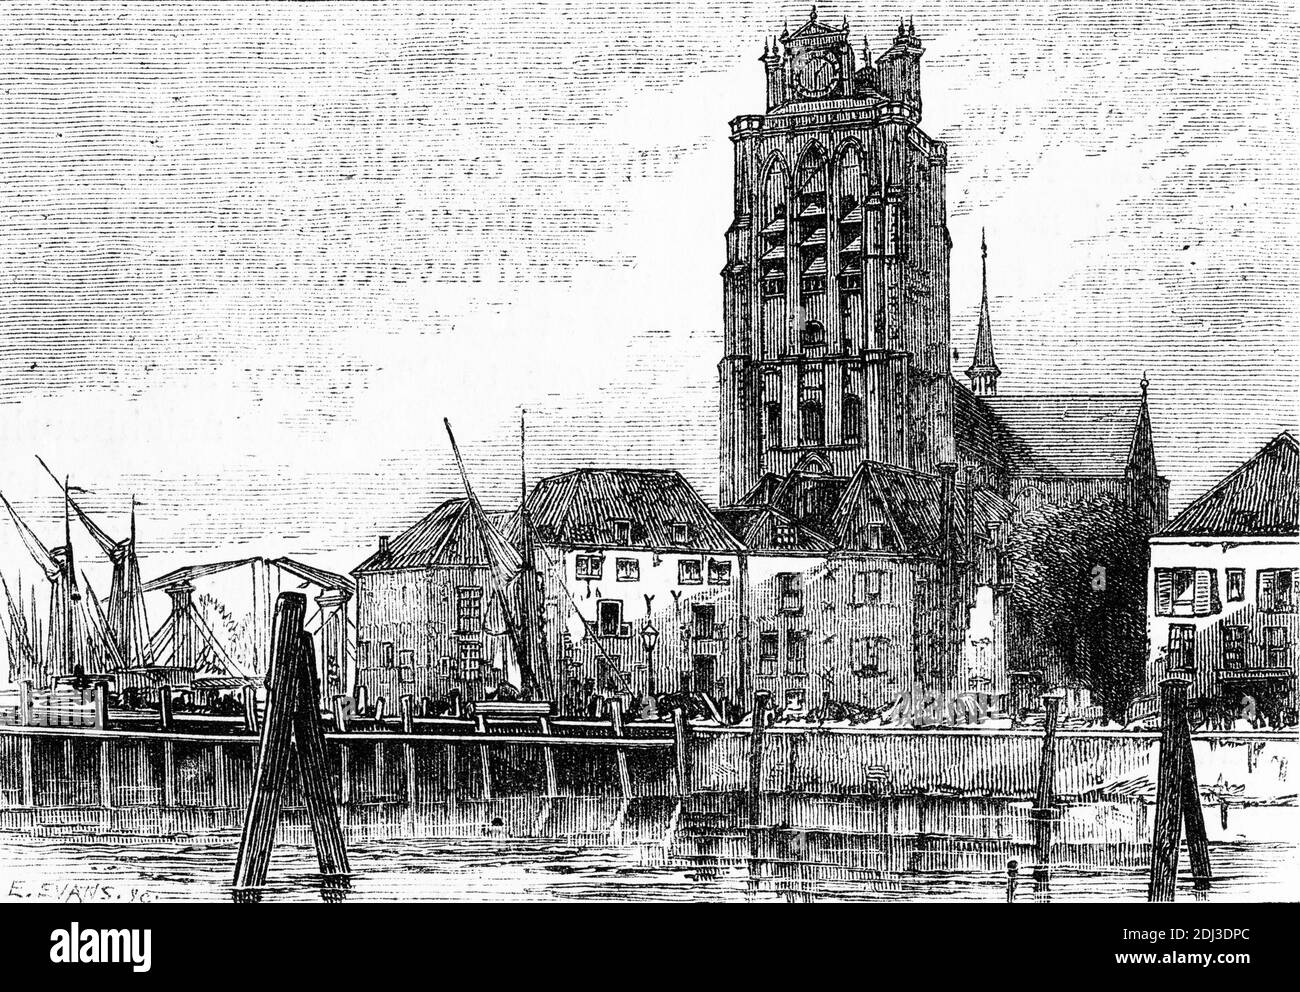 Grabado de la catedral en la ciudad de Dordescht, históricamente conocida en inglés como Dordt o Dort, una ciudad y municipio en los países Bajos occidentales, situado en la provincia de Holanda del Sur. Foto de stock